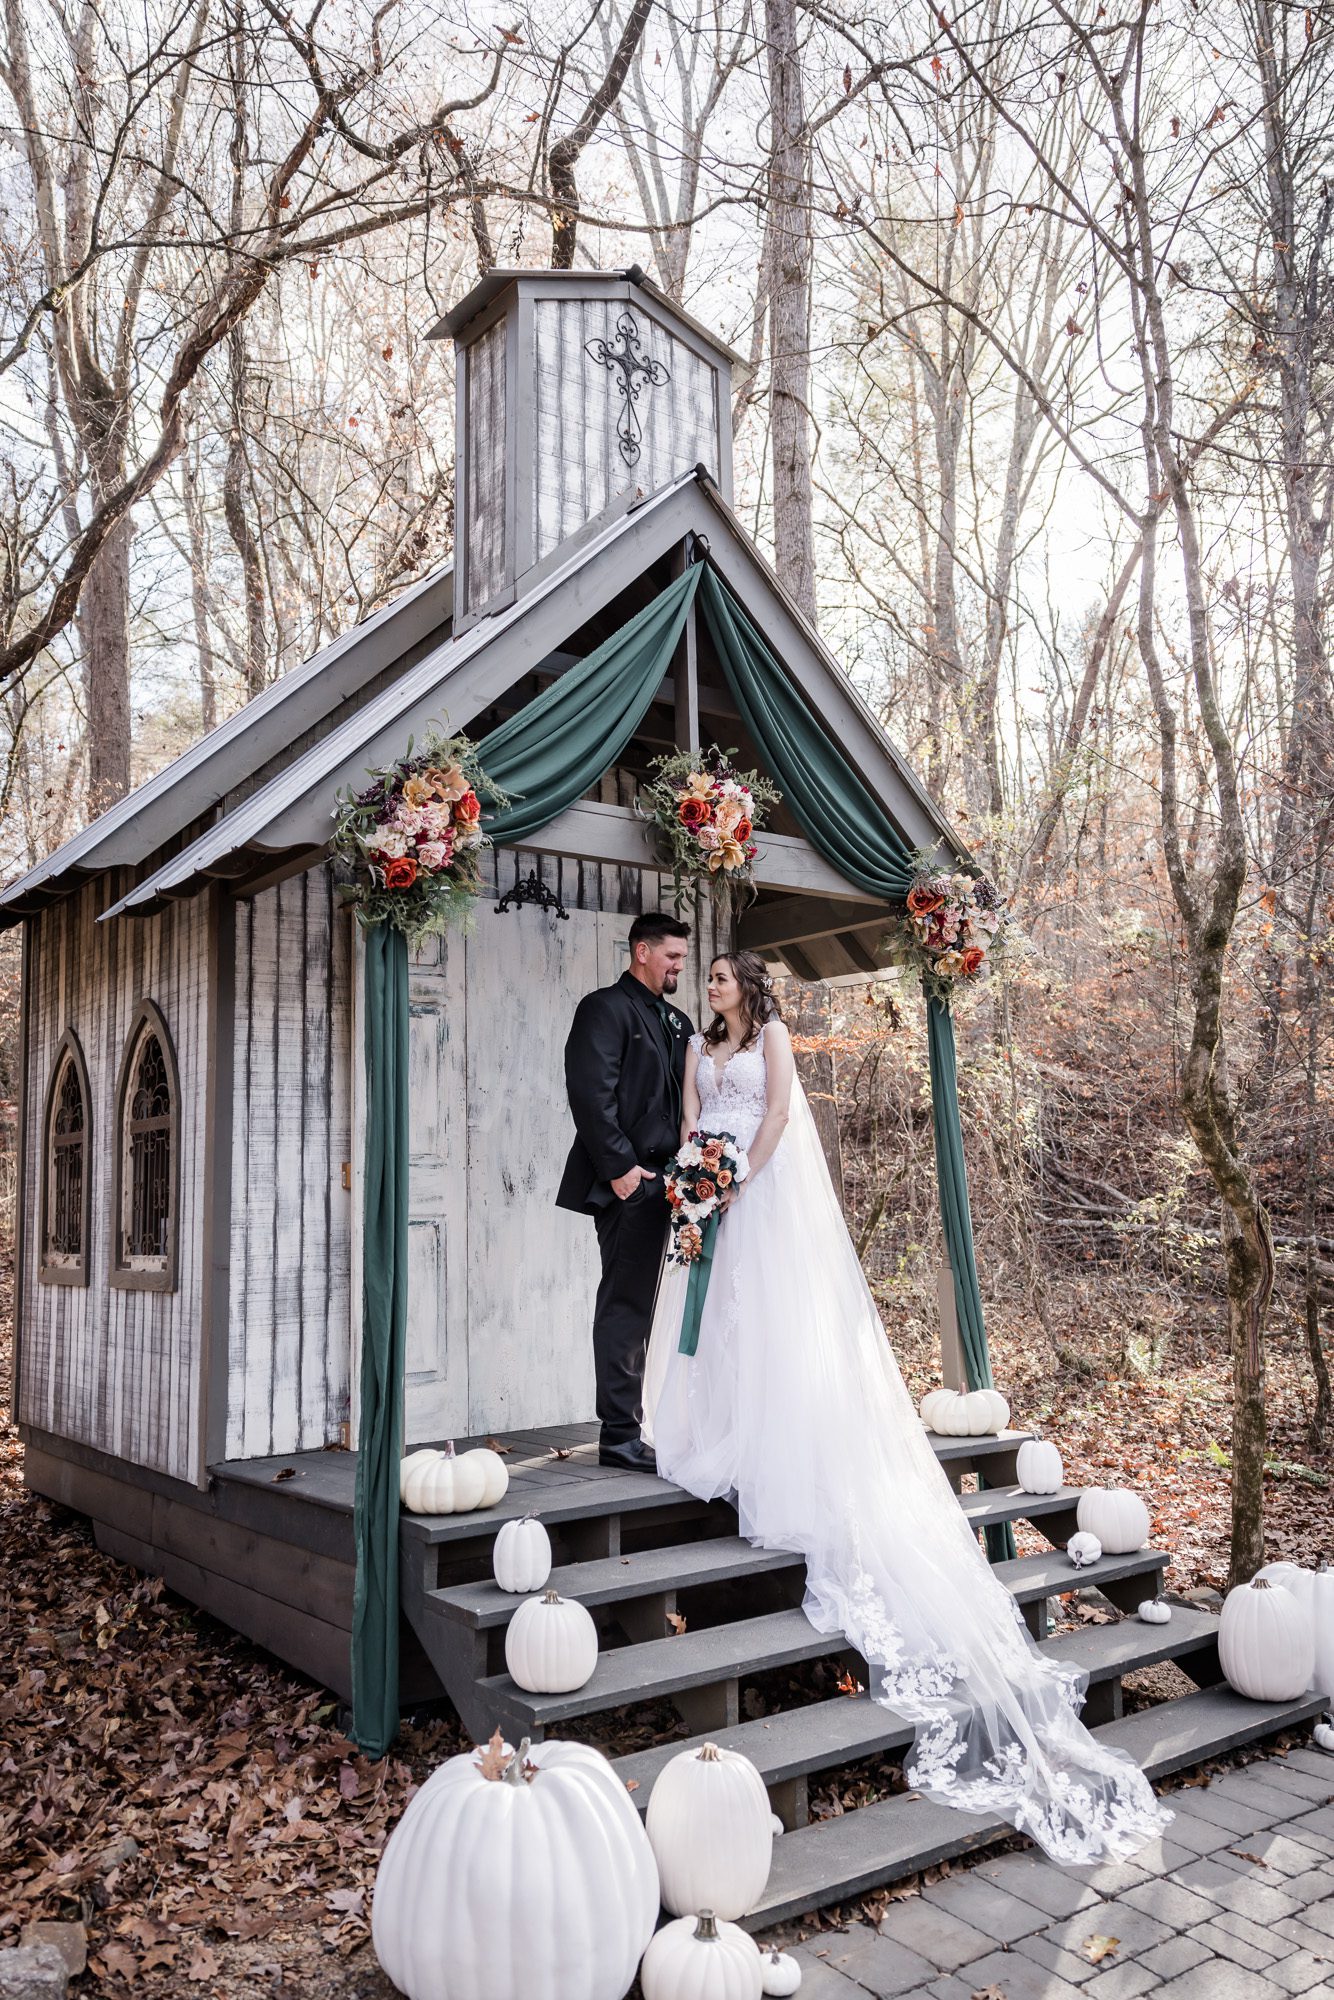 Outdoor bride and groom portrait